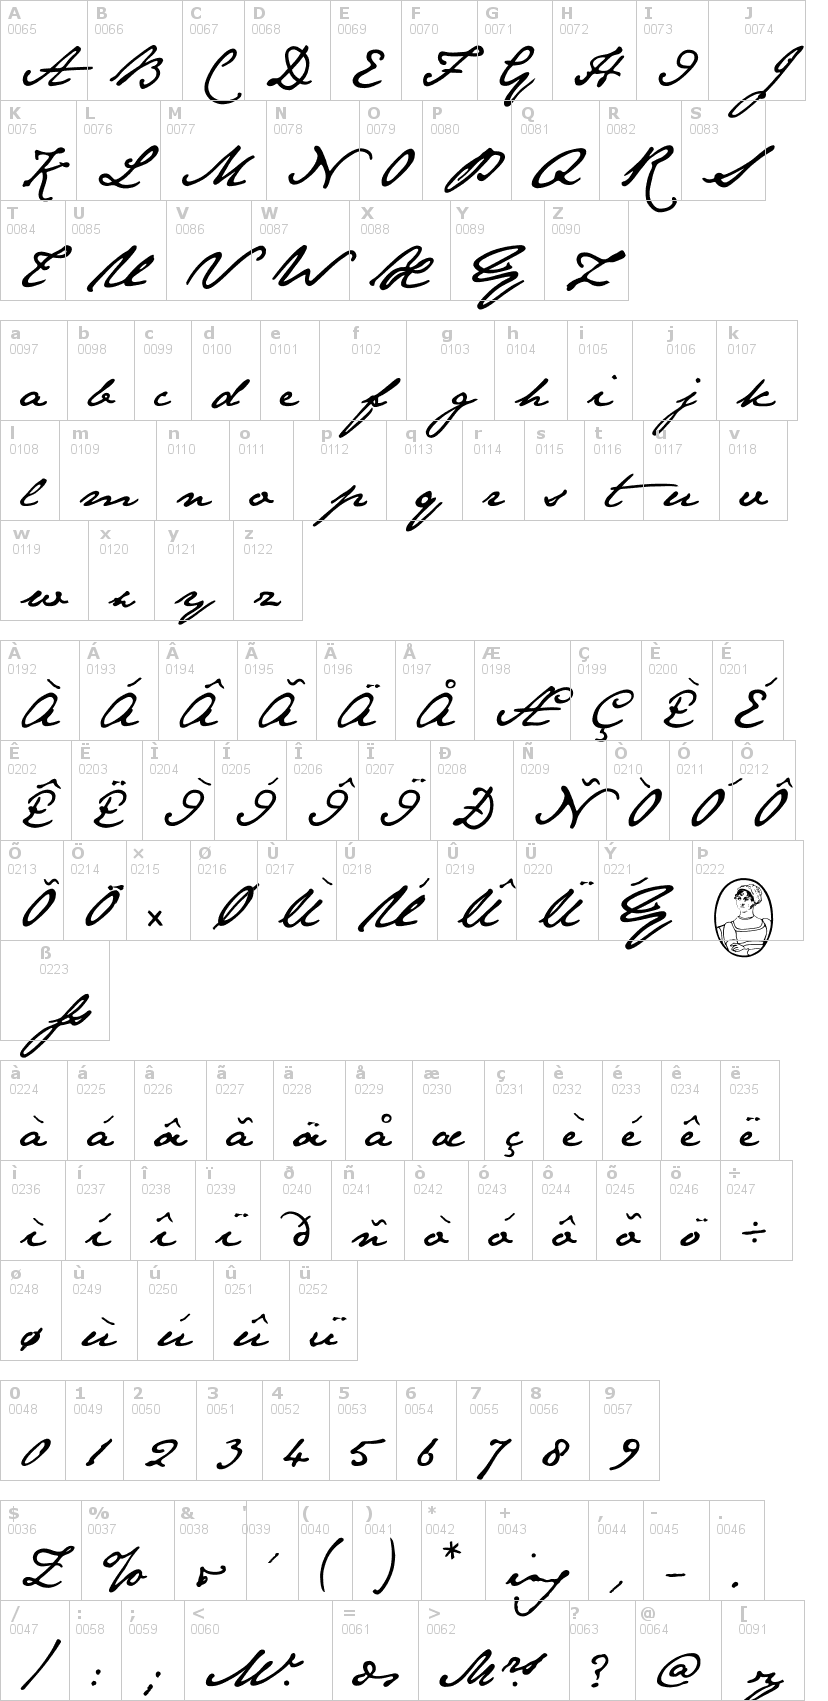 Lettere dell'alfabeto del font jane-austen con le quali è possibile realizzare adesivi prespaziati